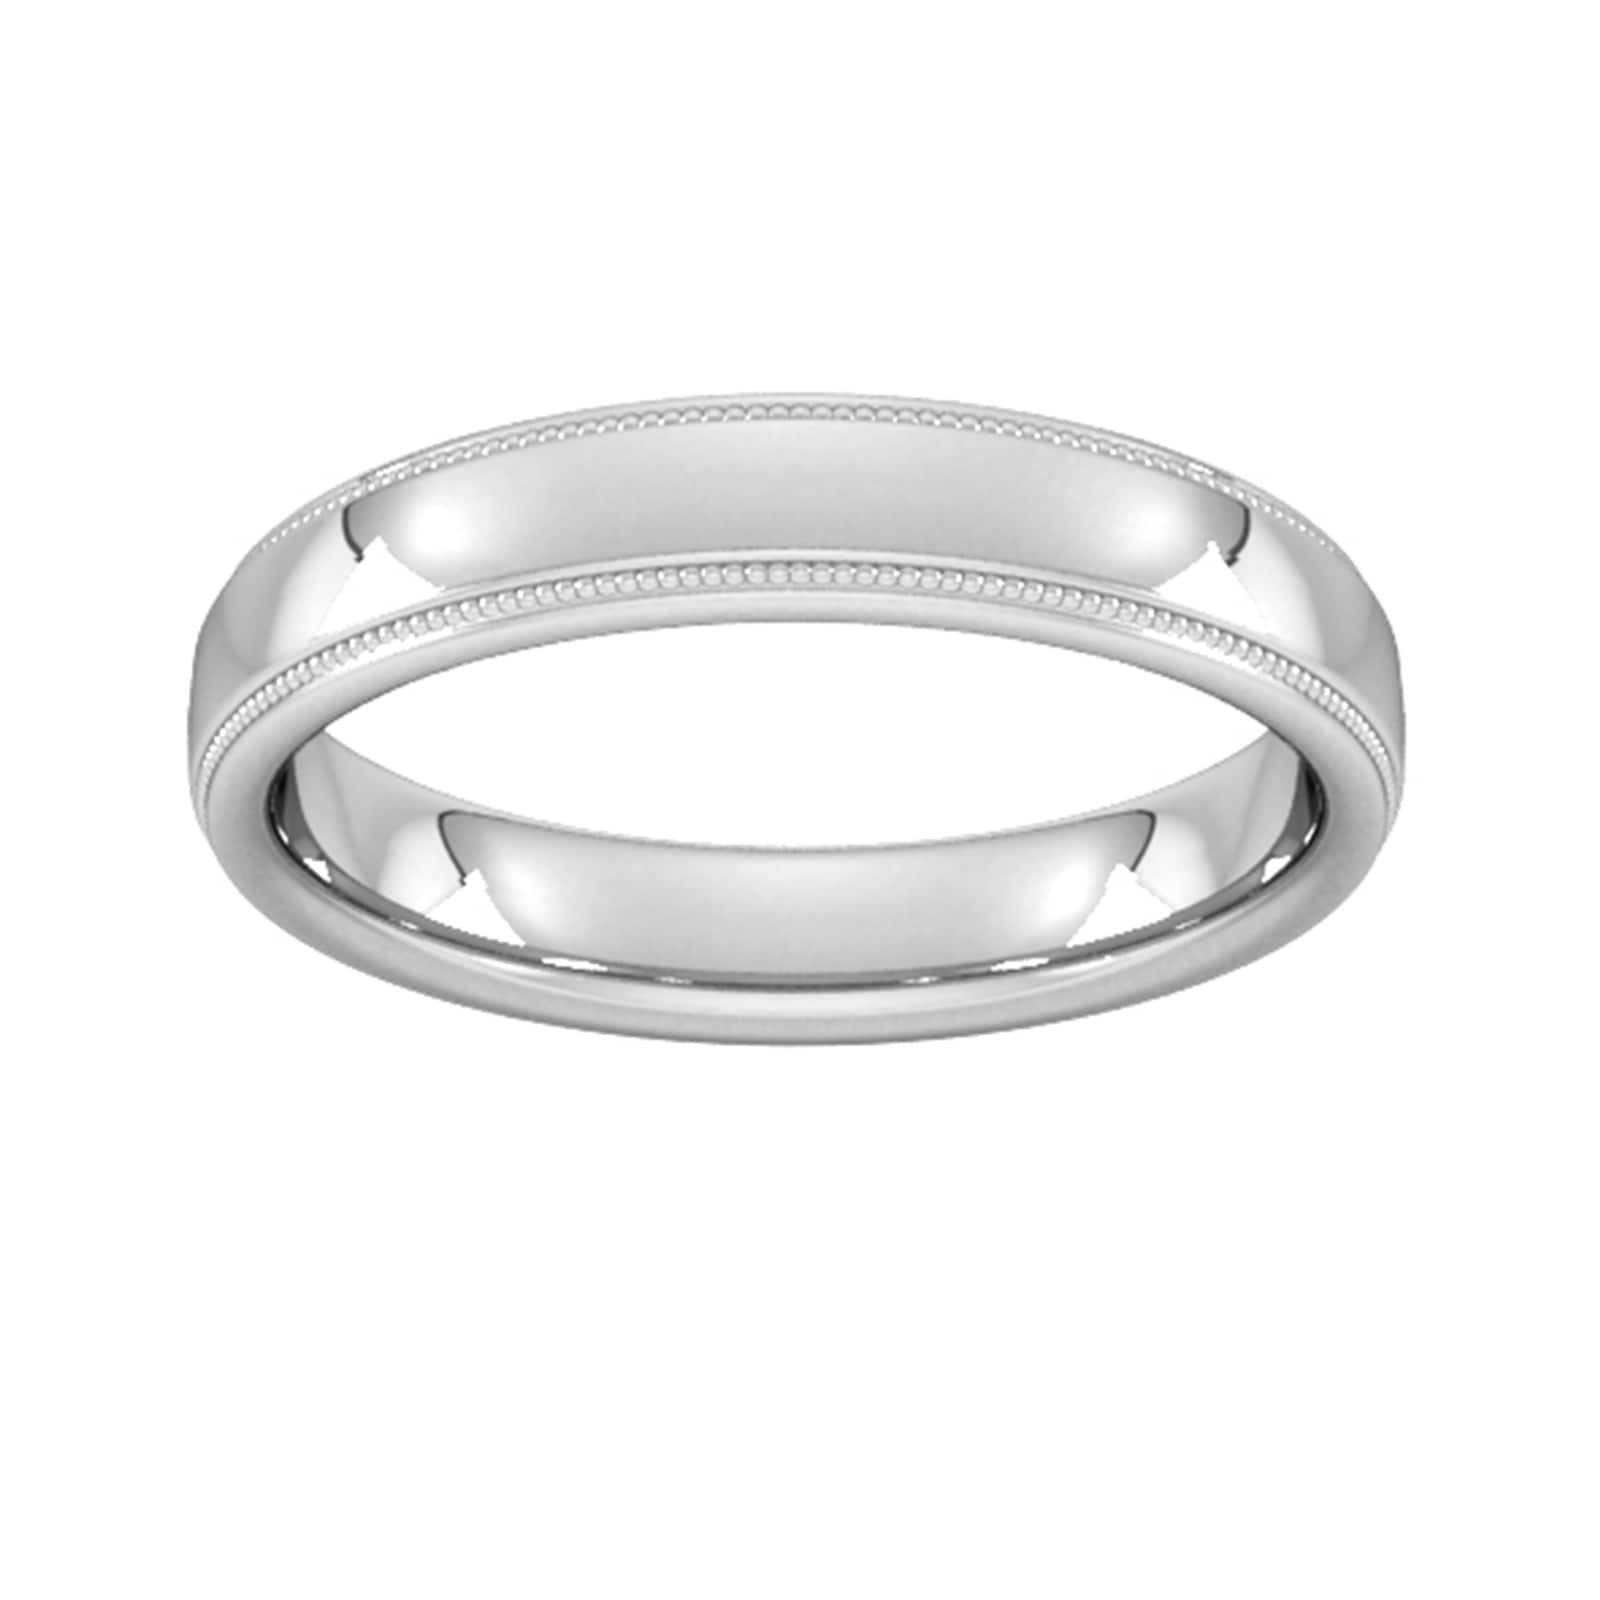 4mm Slight Court Heavy Milgrain Edge Wedding Ring In 18 Carat White Gold - Ring Size L